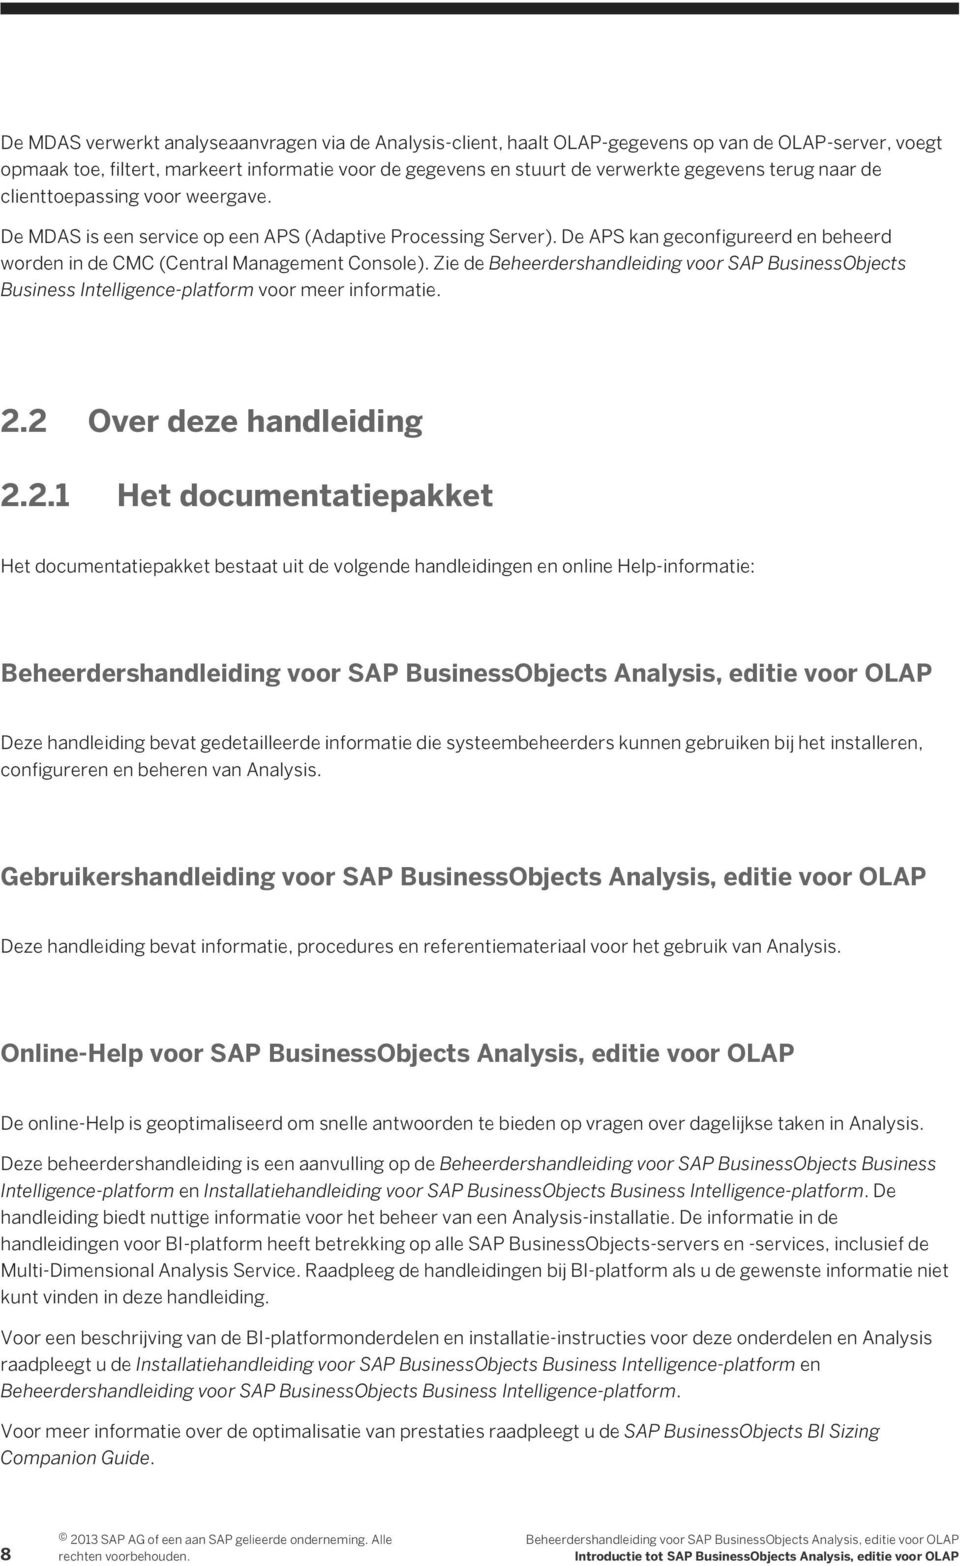 Zie de Beheerdershandleiding voor SAP BusinessObjects Business Intelligence-platform voor meer informatie. 2.